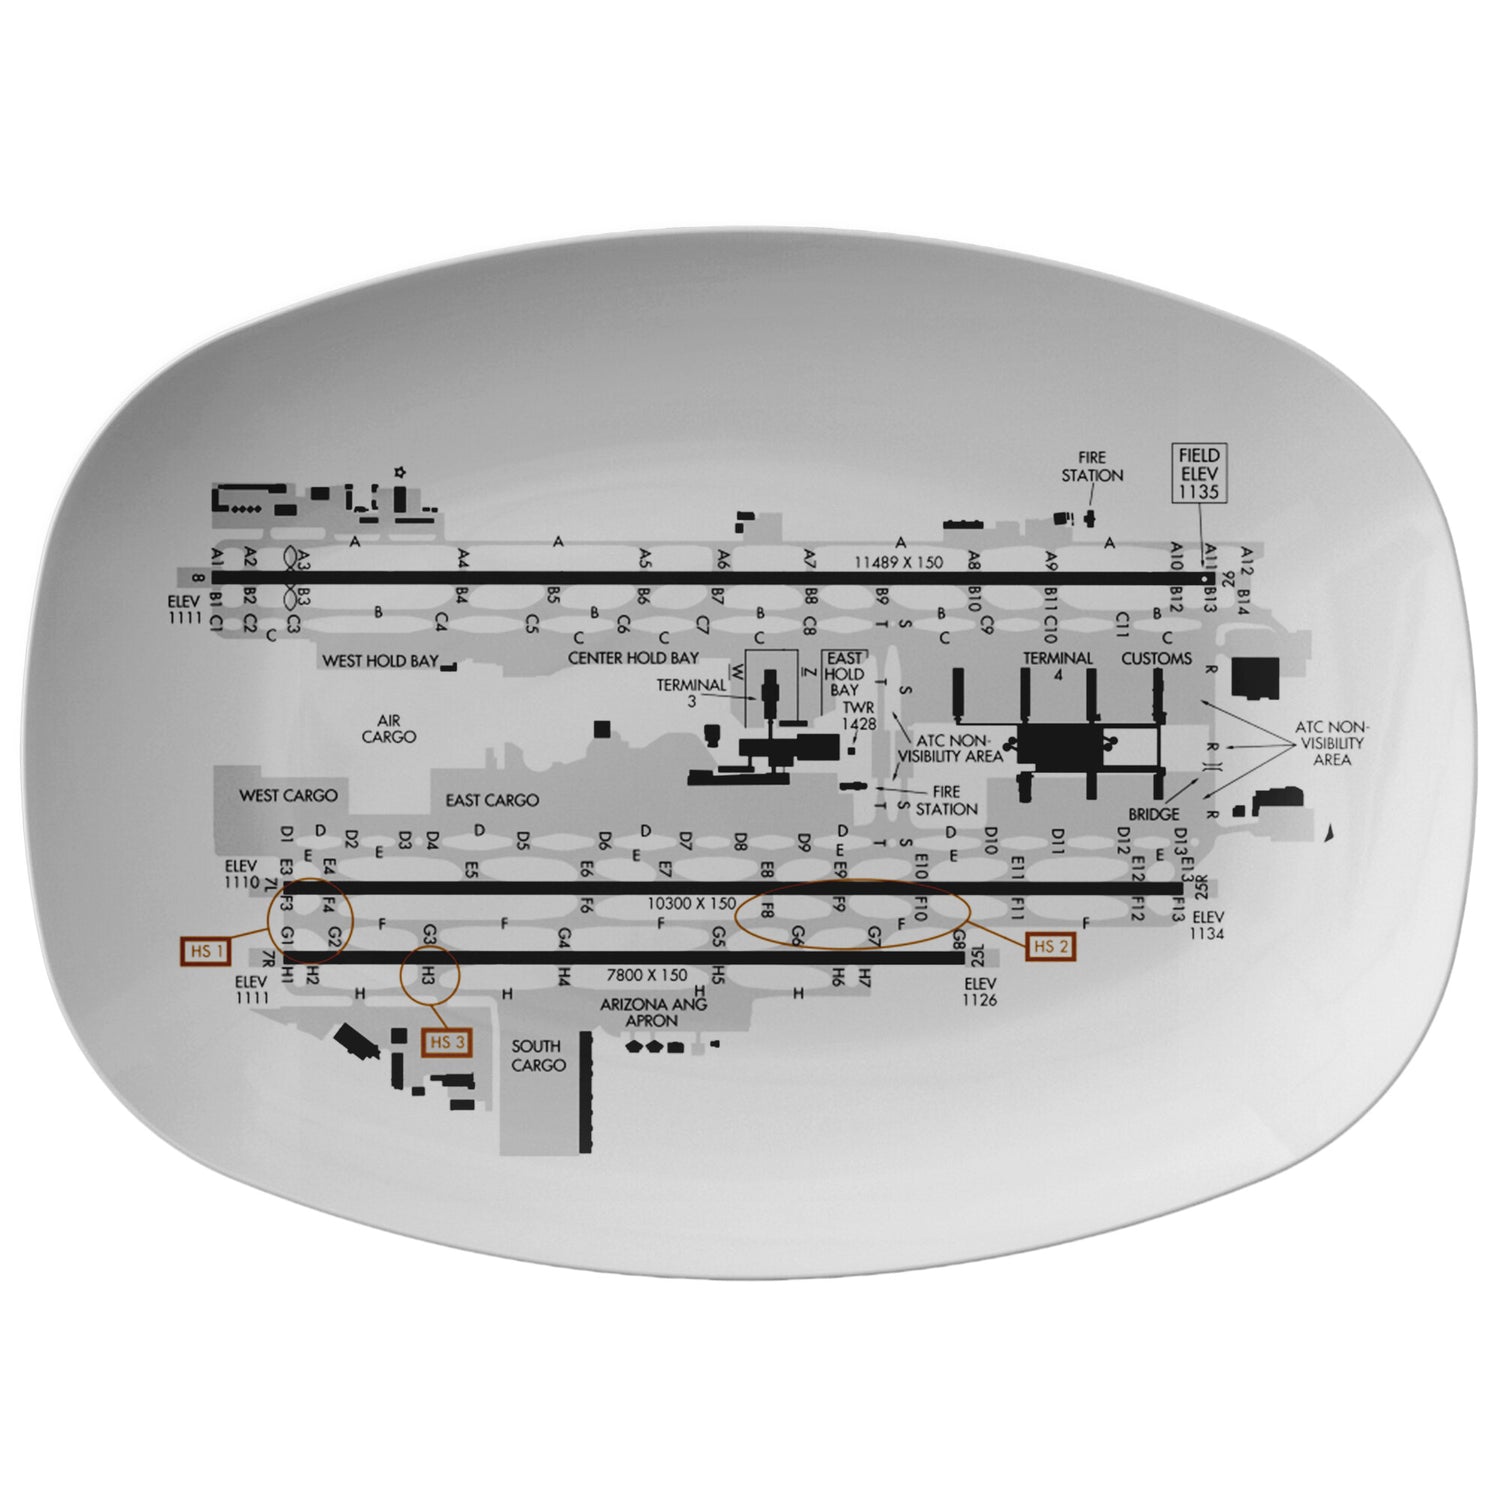 Phoenix Sky Harbor Airport taxi diagram - serving platter